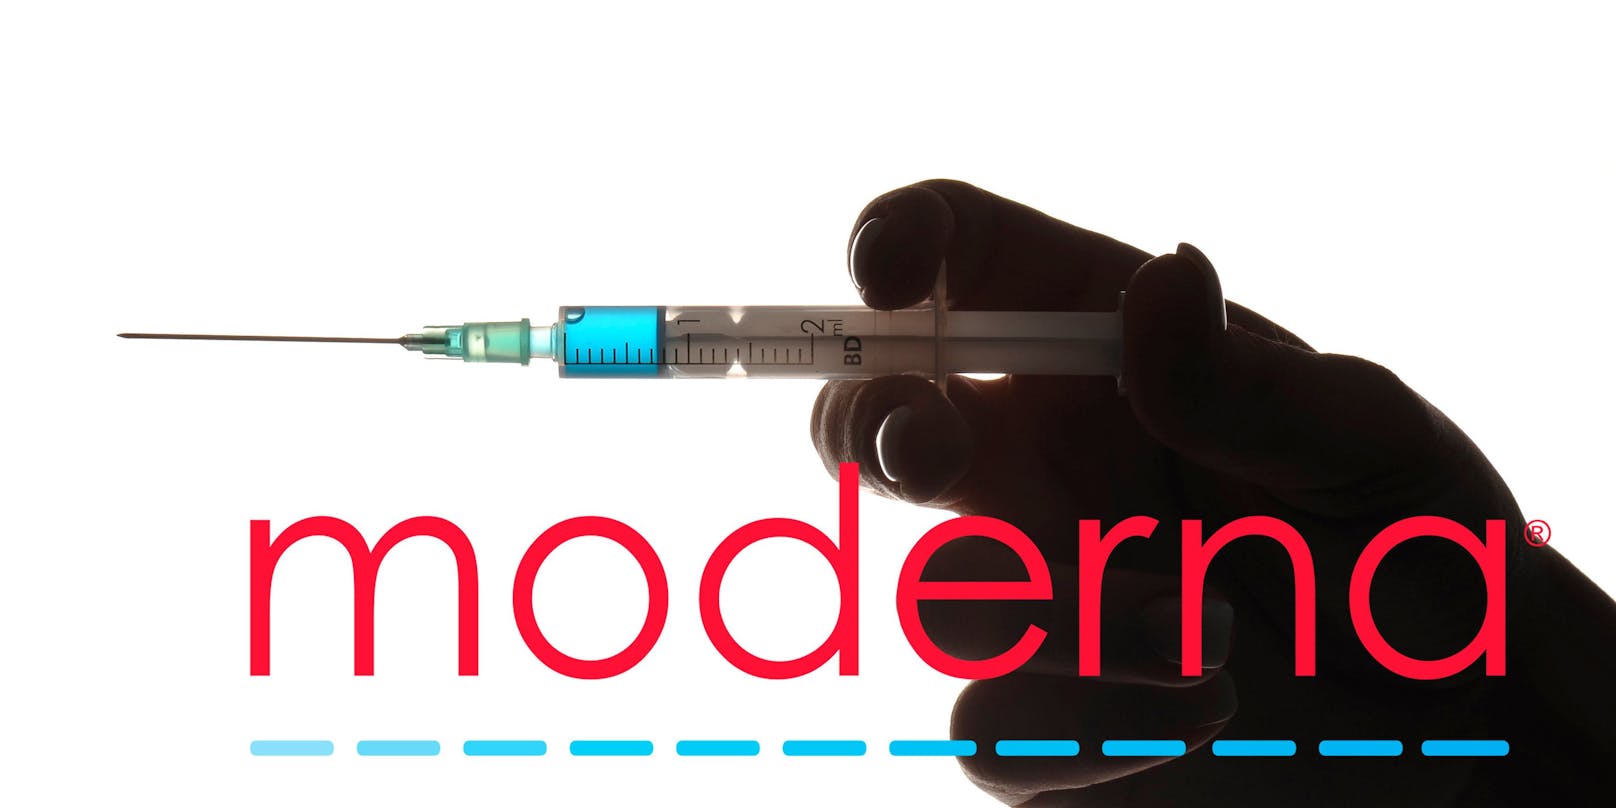 Der Moderna-Impfstoff soll sogar zu über 94 Prozent wirksam sein.